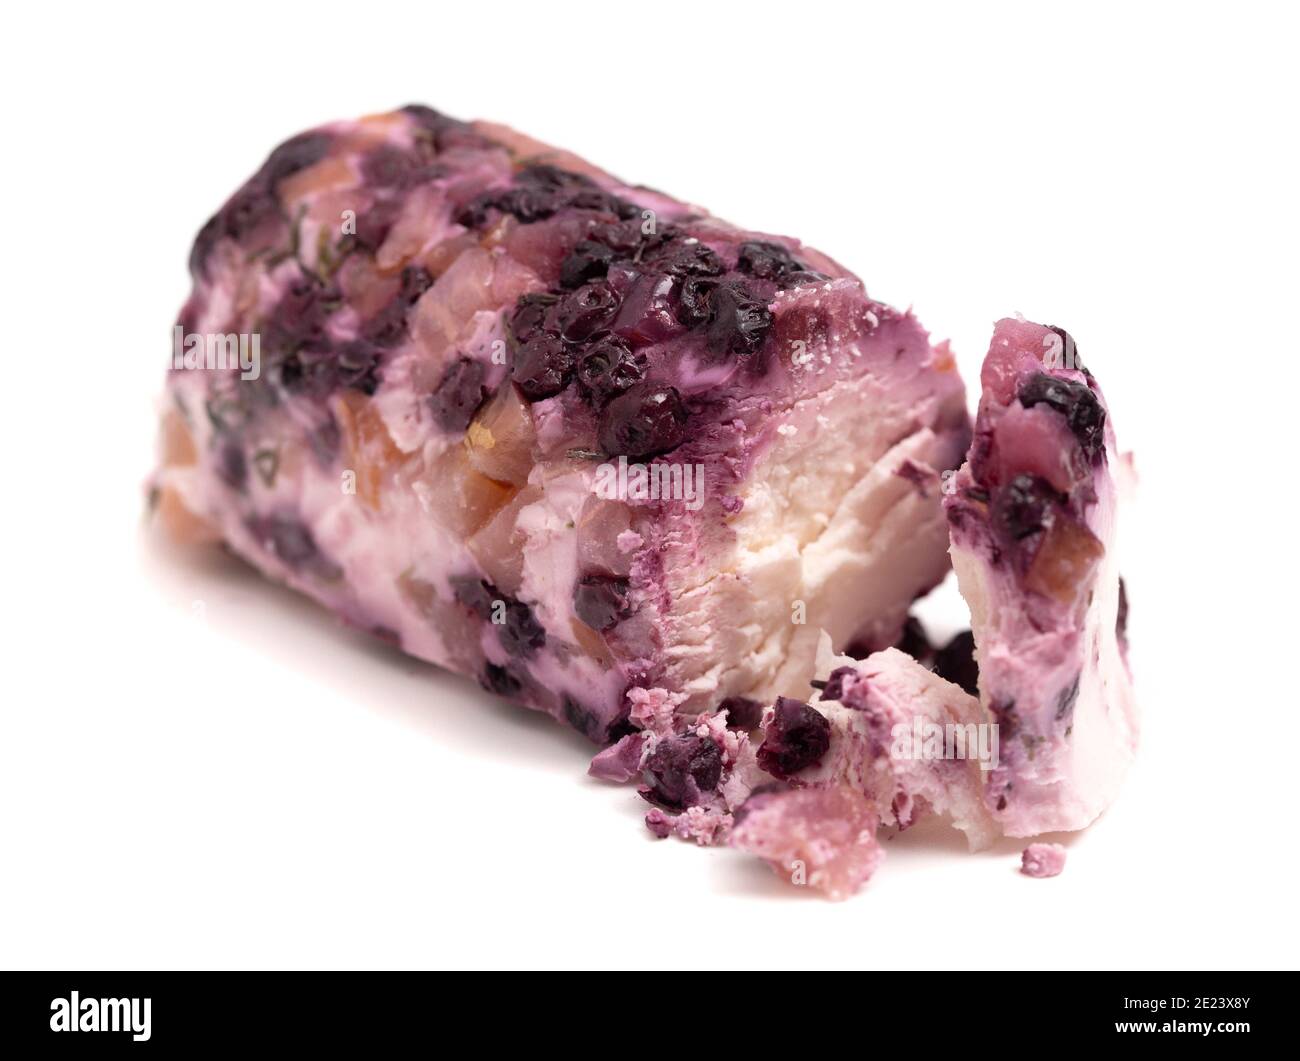 Une Log de fromage de chèvre recouverte de baies violettes isolées Sur fond blanc Banque D'Images